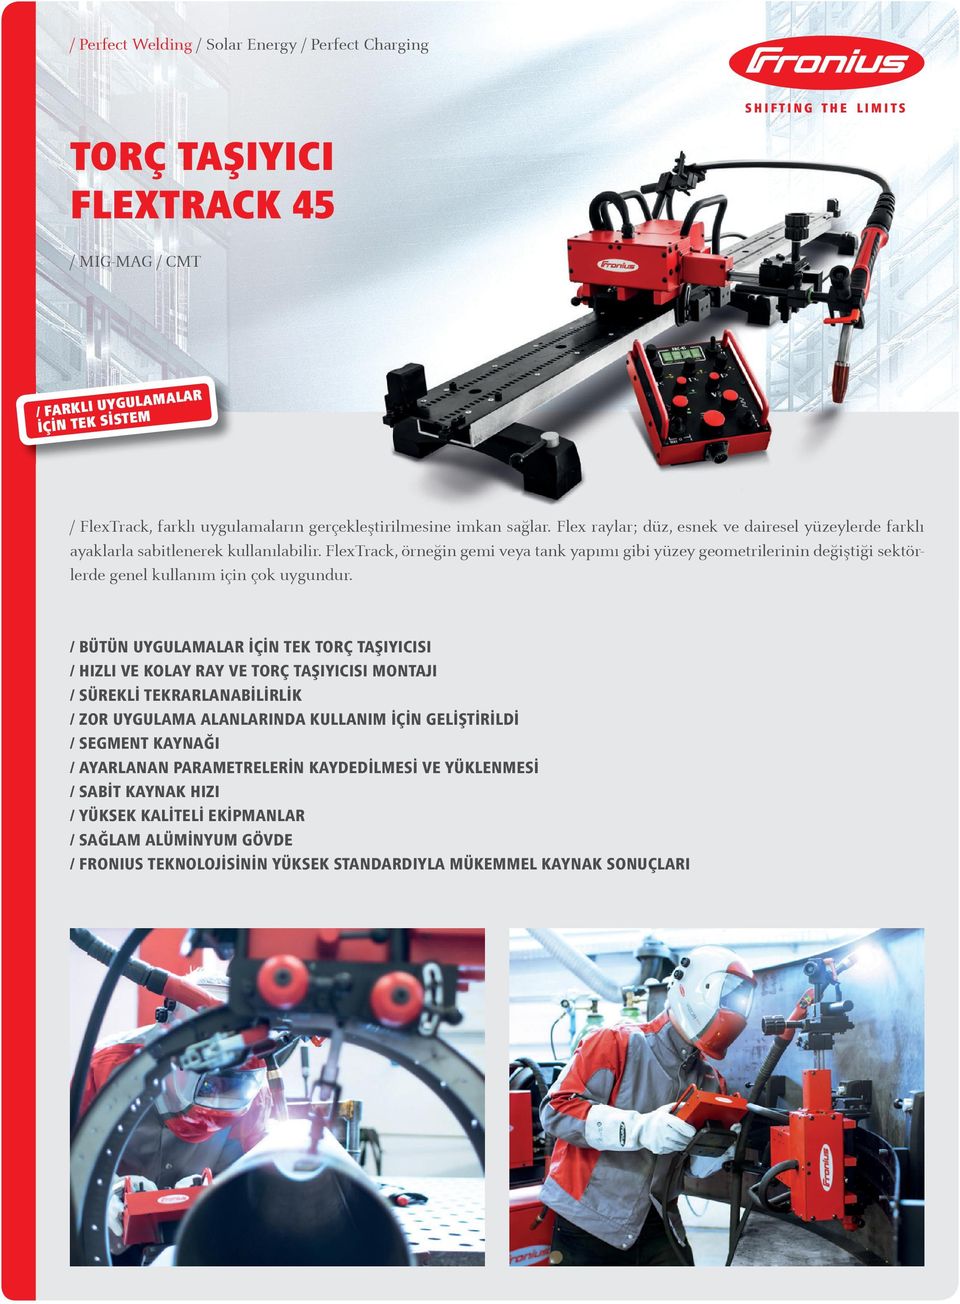 FlexTrack, örneğin gemi veya tank yapımı gibi yüzey geometrilerinin değiştiği sektörlerde genel kullanım için çok uygundur.